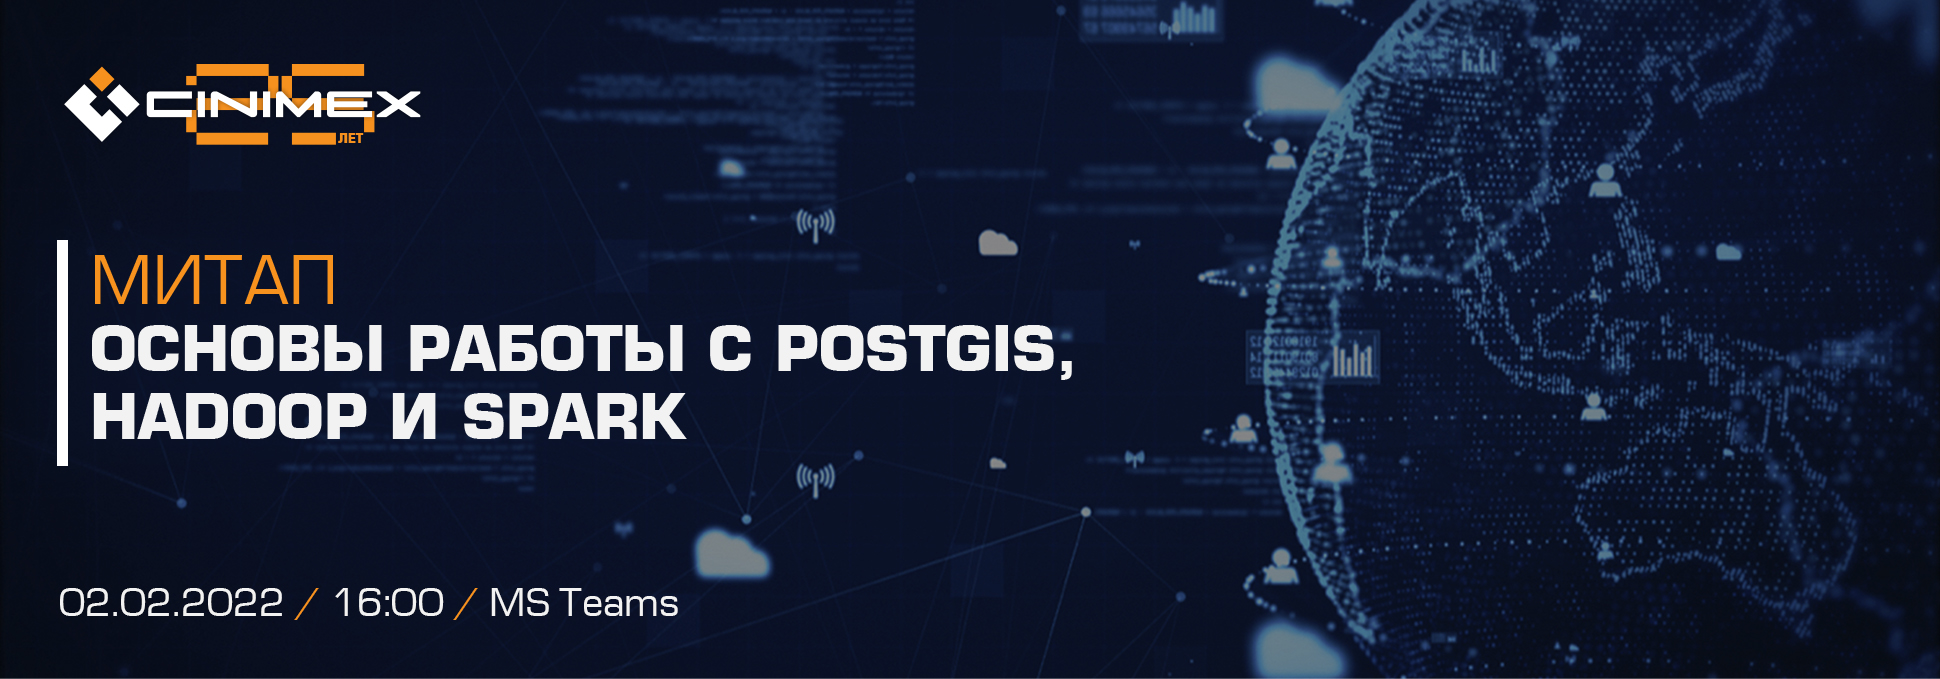 Обложка курса Митап «Основы работы с PostGIS, Hadoop и Spark»